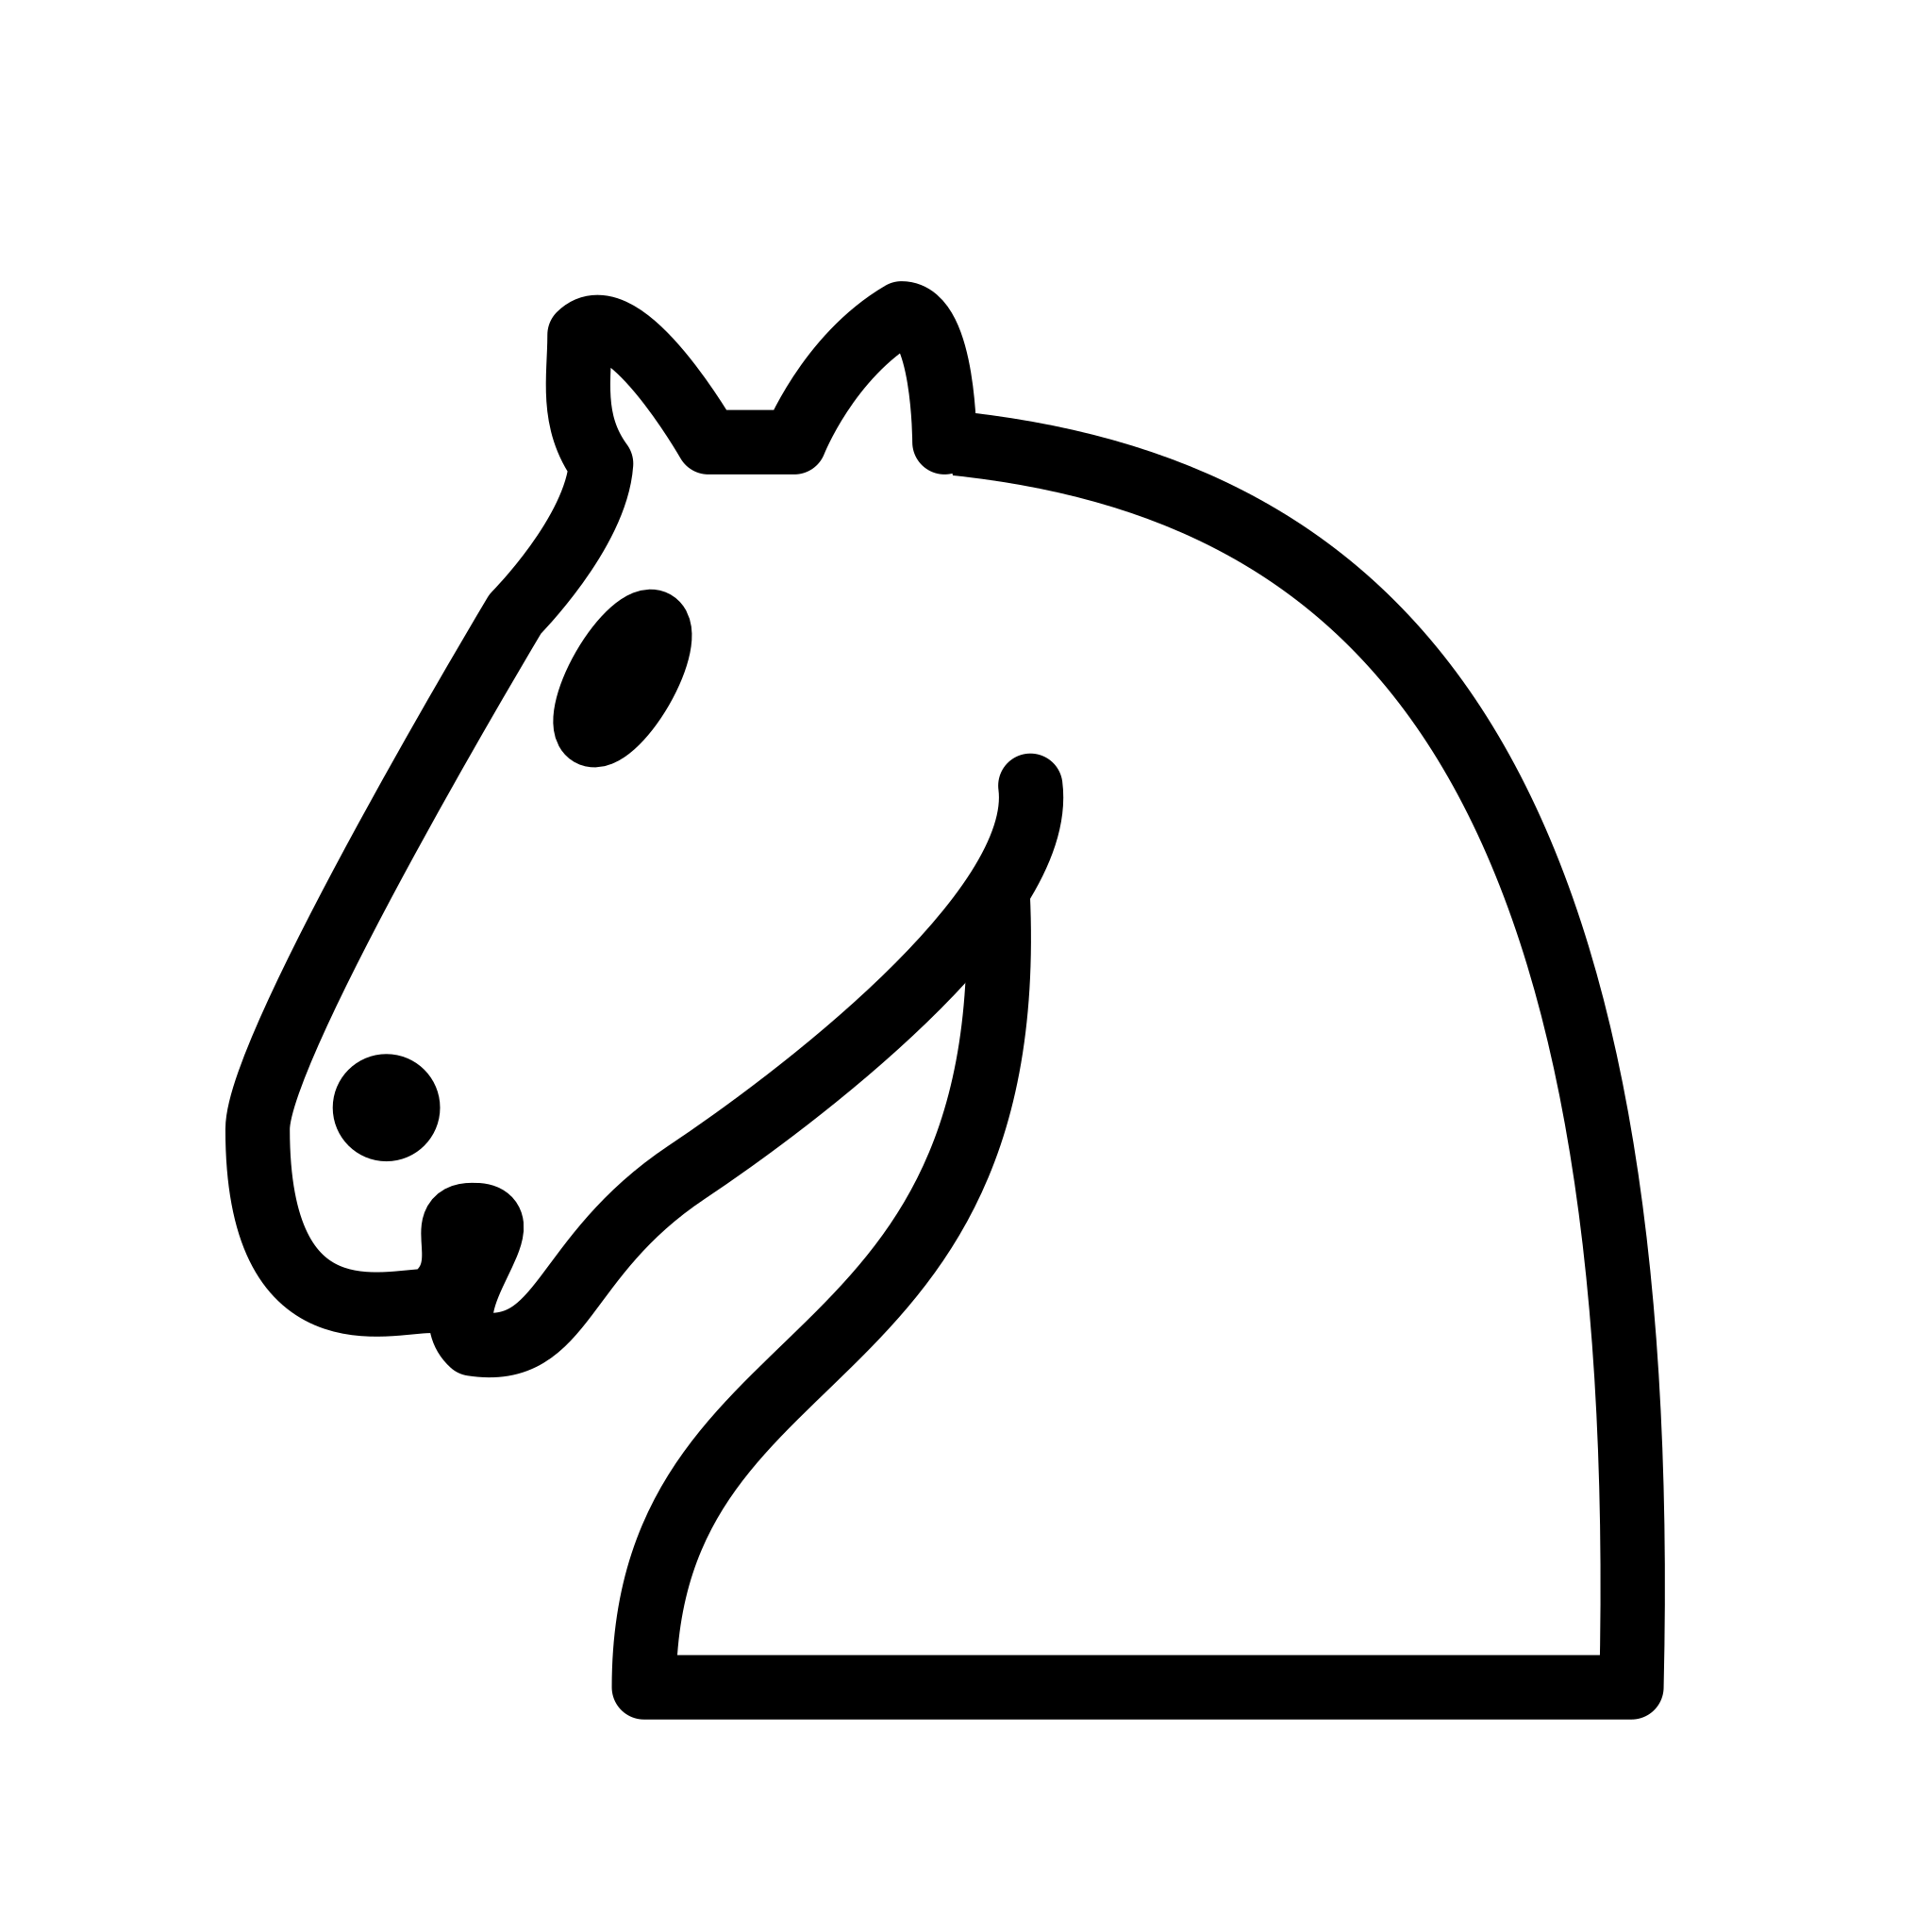 File:Chess symbols.svg - Wikipedia